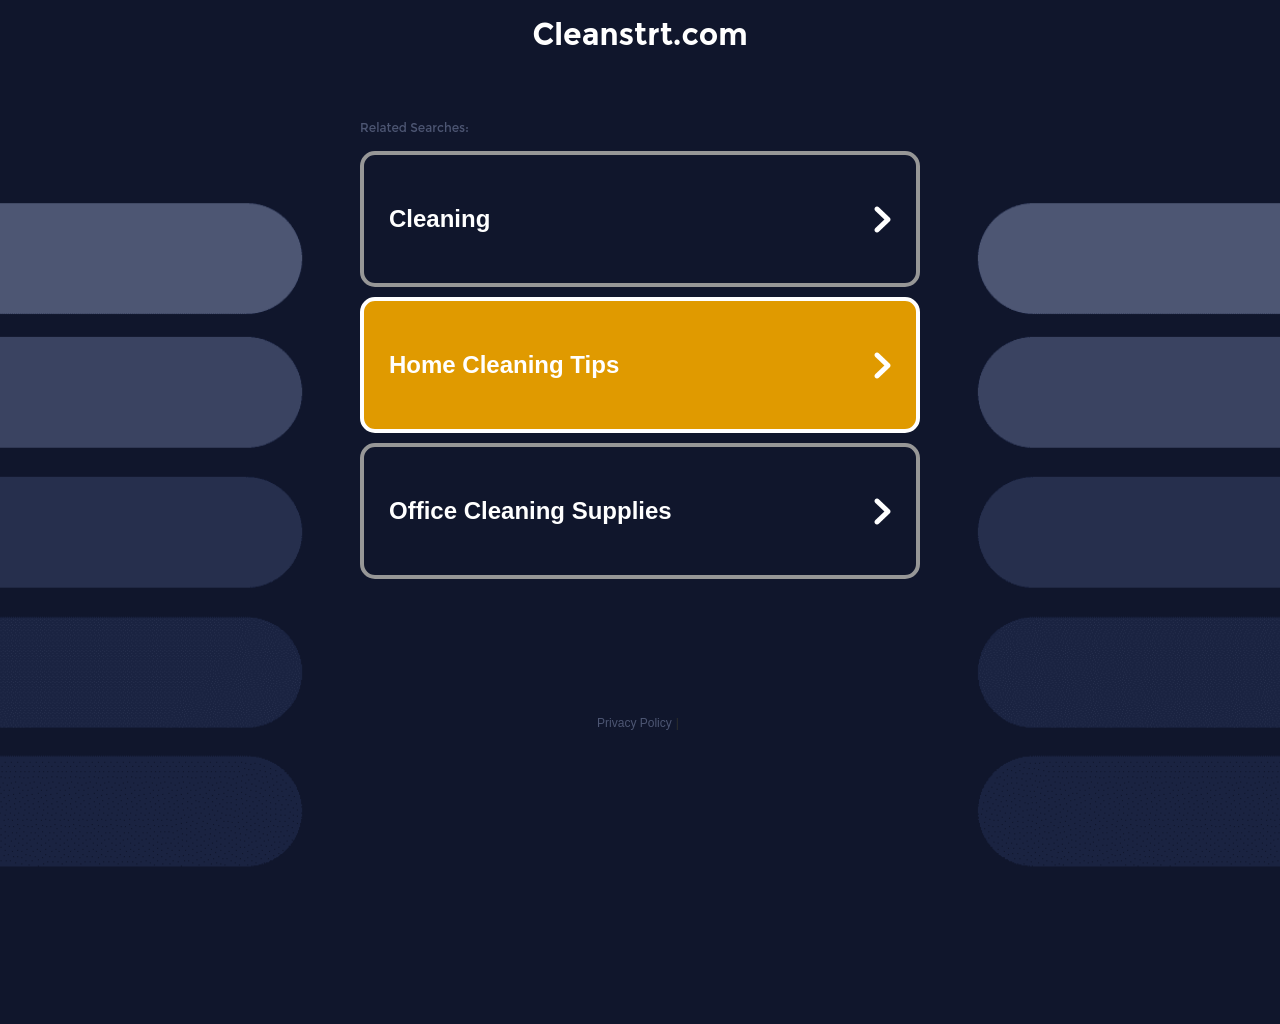 cleanstrt.com